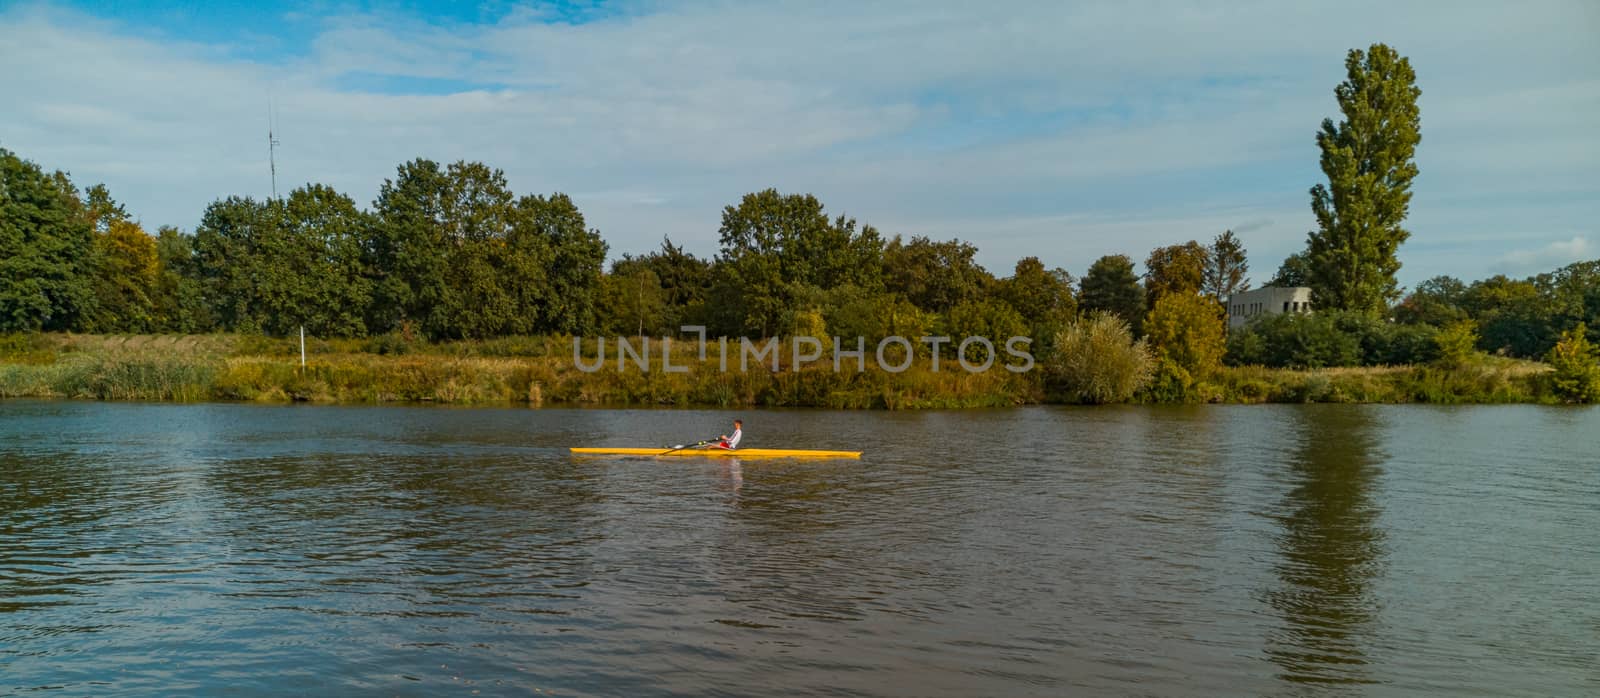 Man swimming on yellow kayak on Odra river by Wierzchu